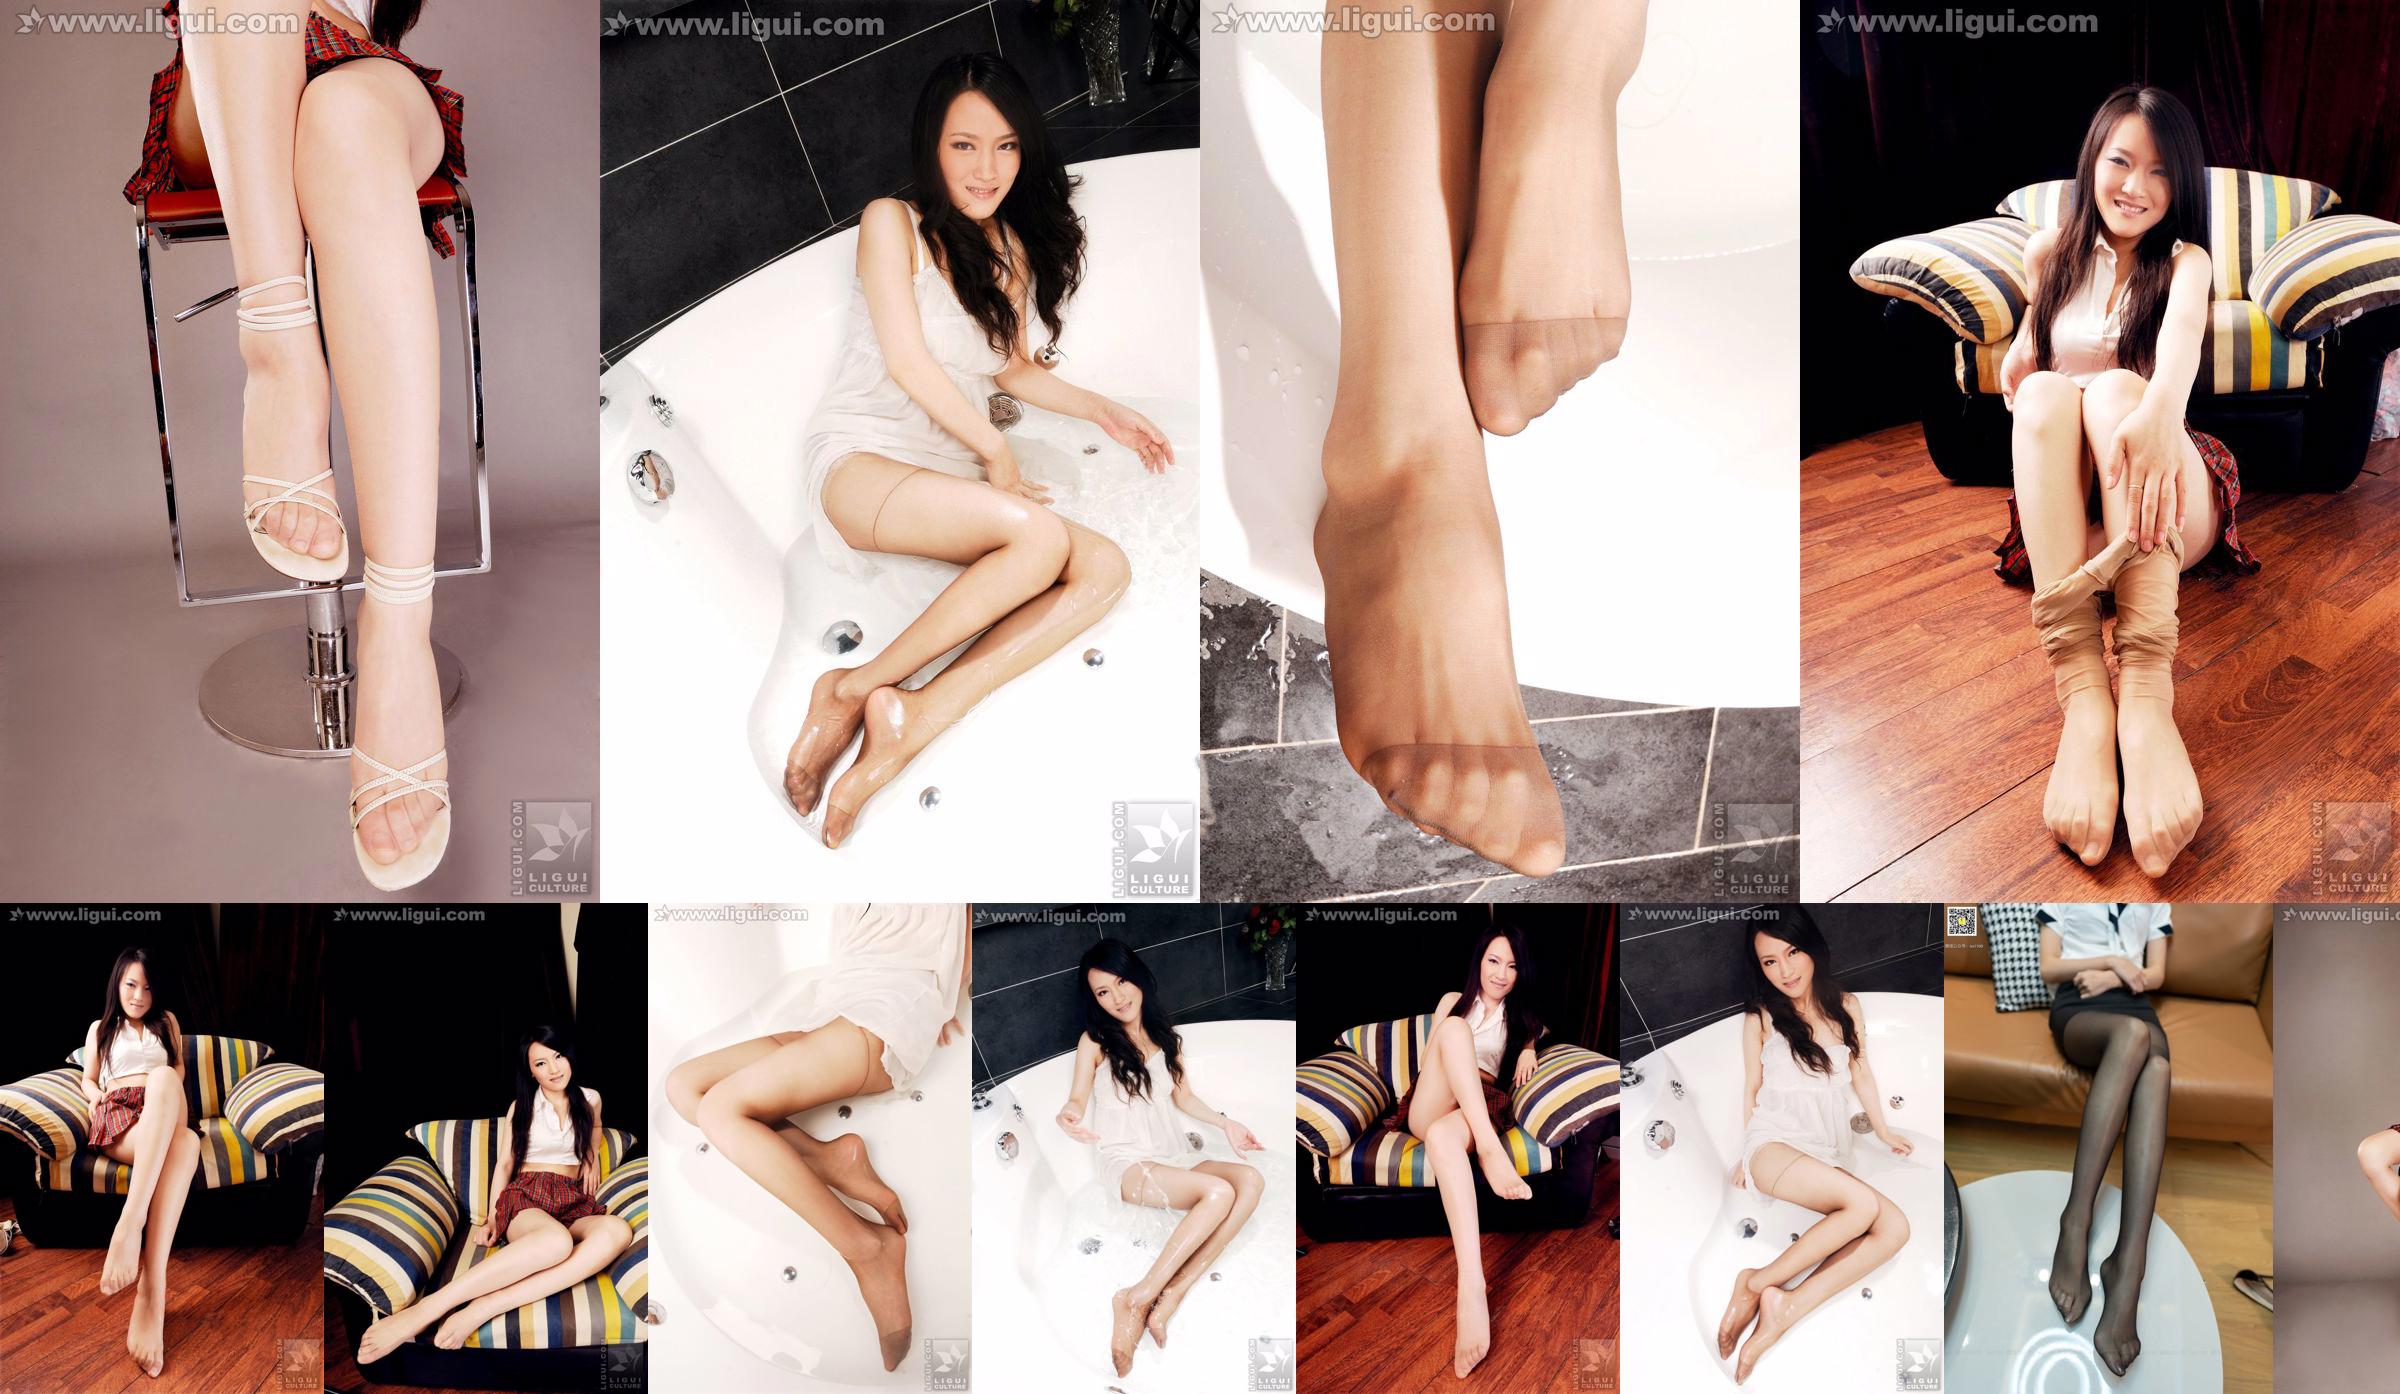 Modelo Wen Ting "Pies puros y hermosos" [丽 柜 LiGui] Imagen fotográfica de pie de seda No.5d246a Página 1